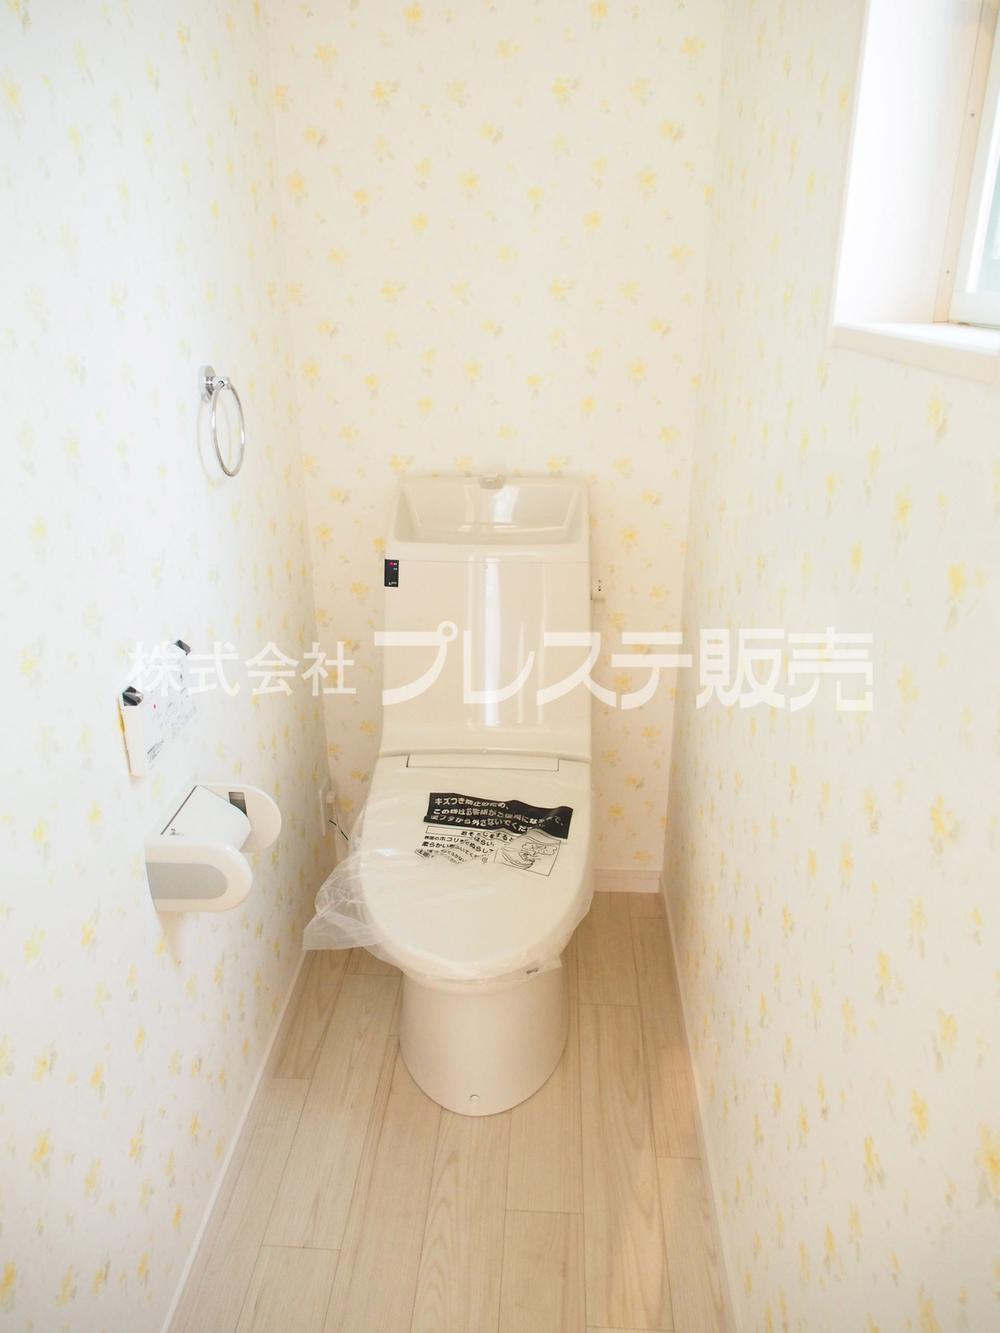 Toilet. Local photo (B No. land toilet)